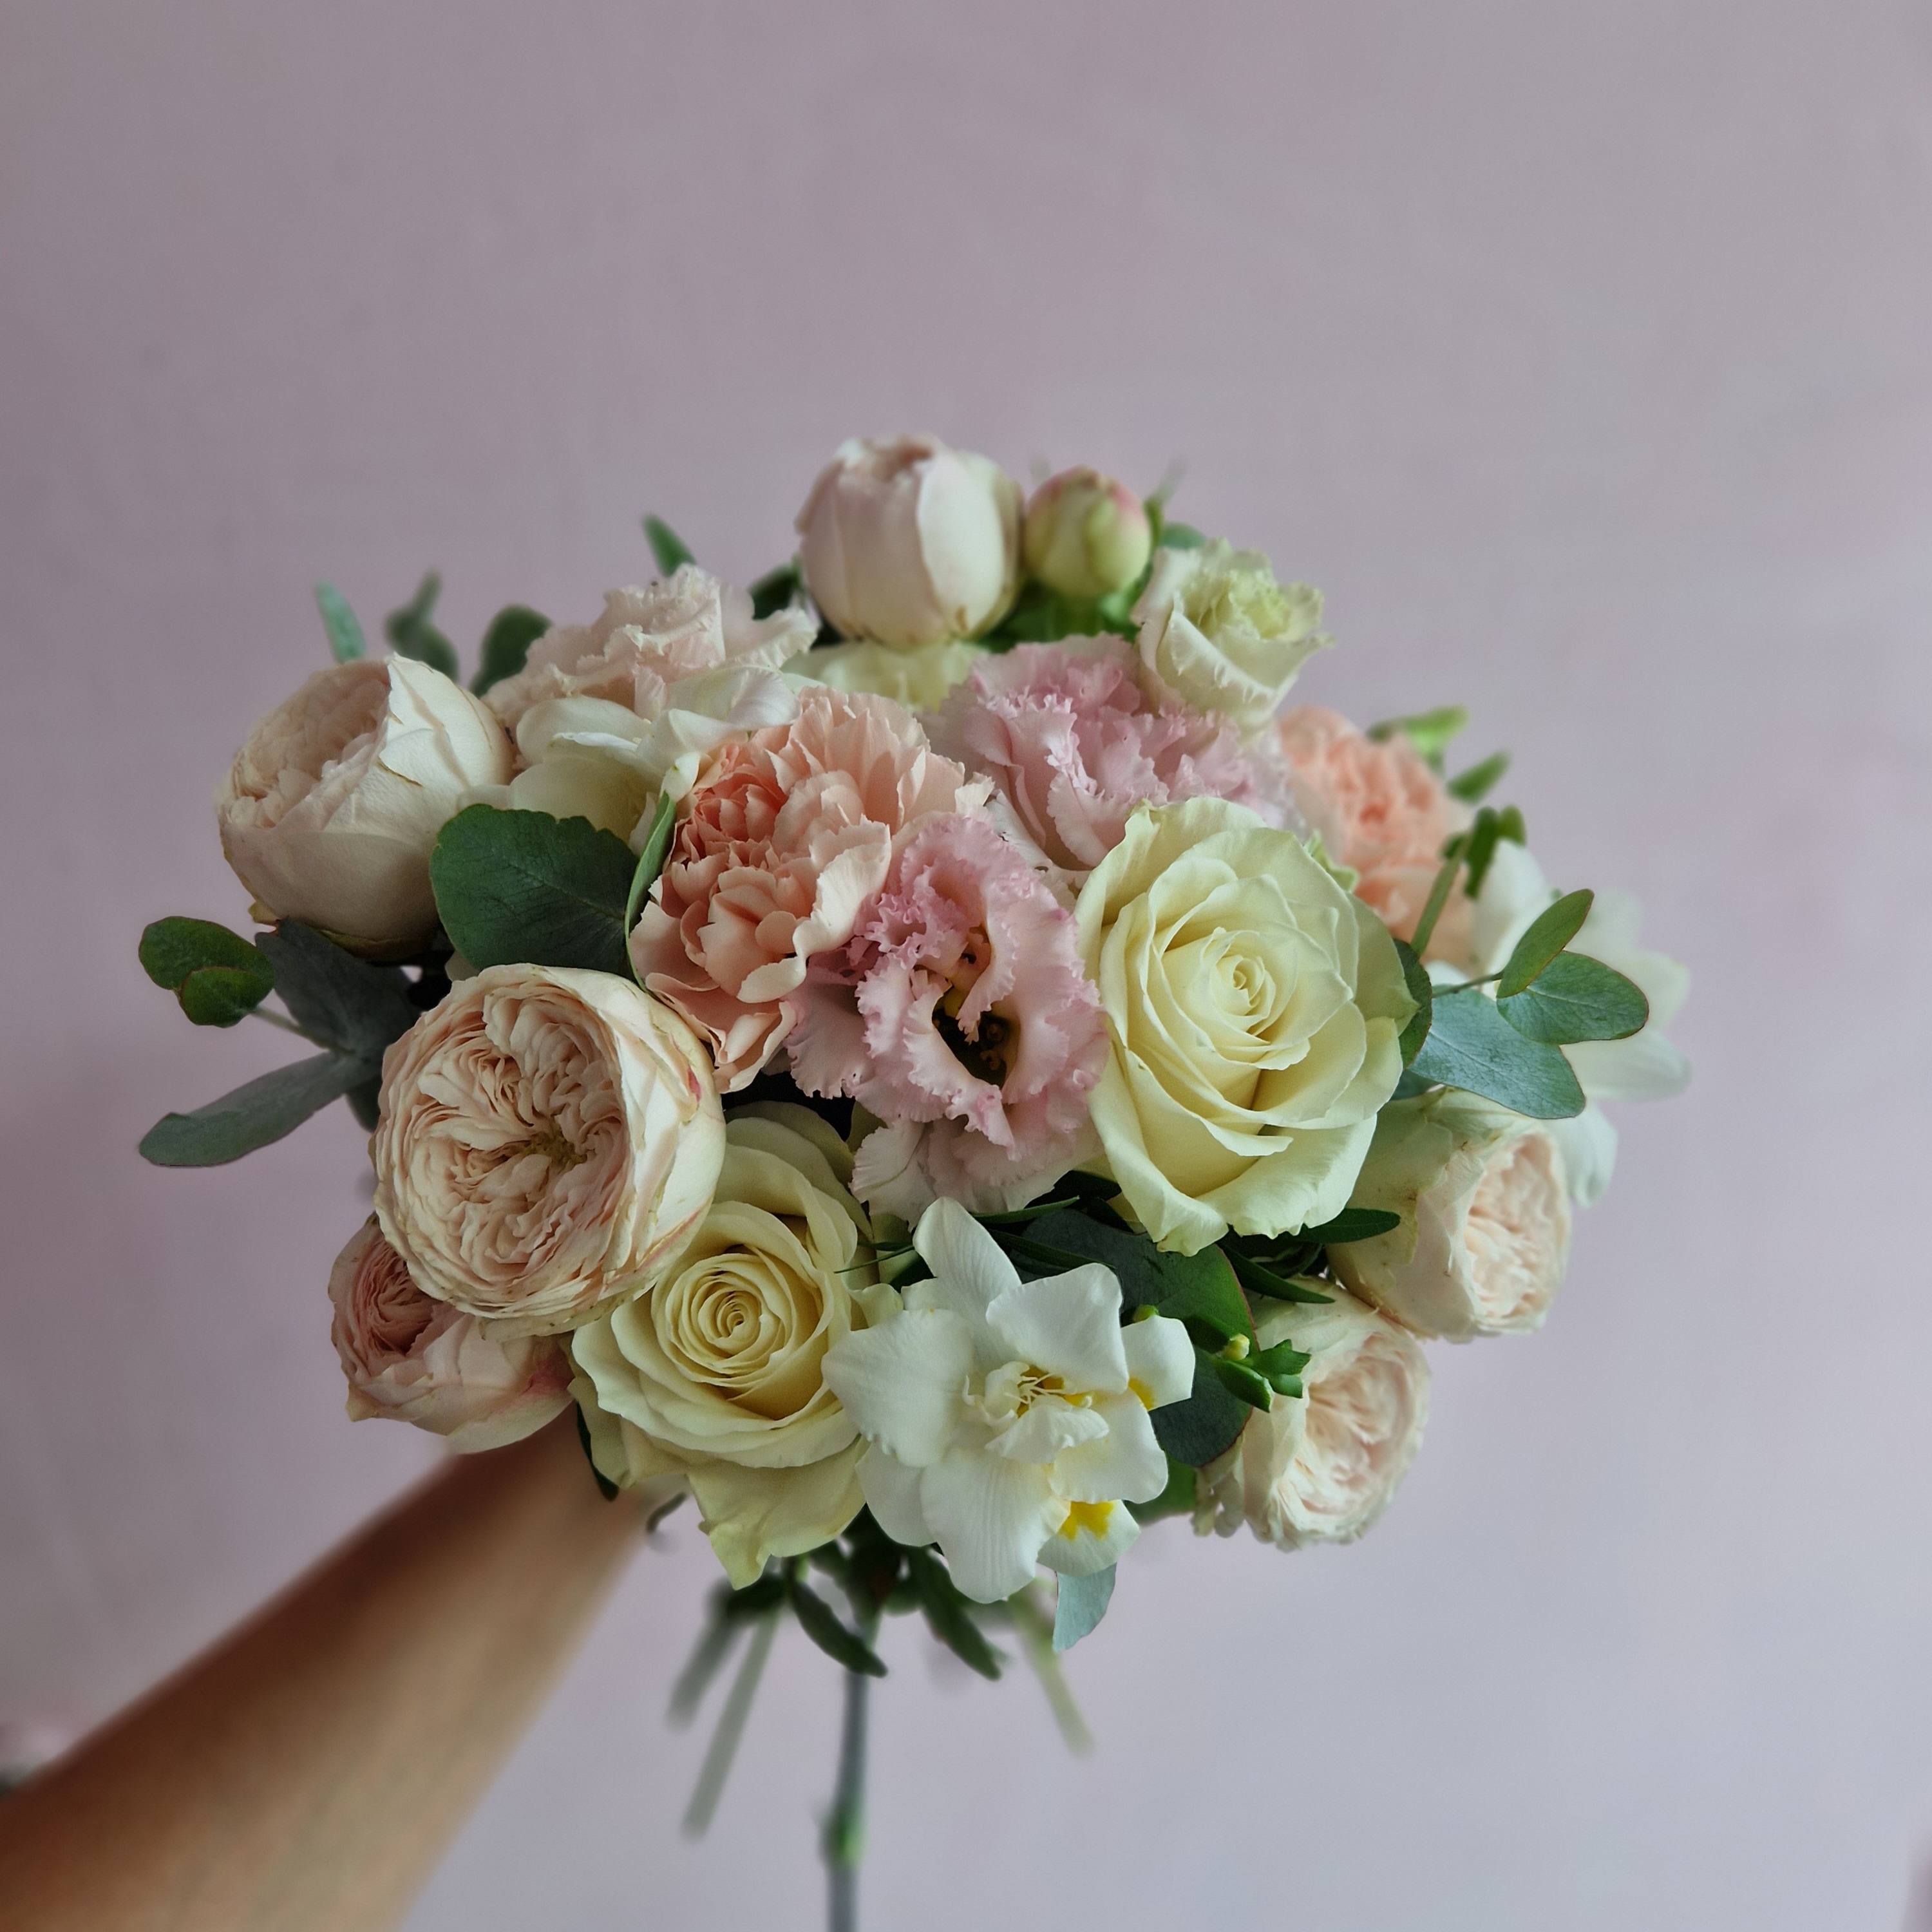 Купить свадебный букет цветов в Минске, заказать букет невесты